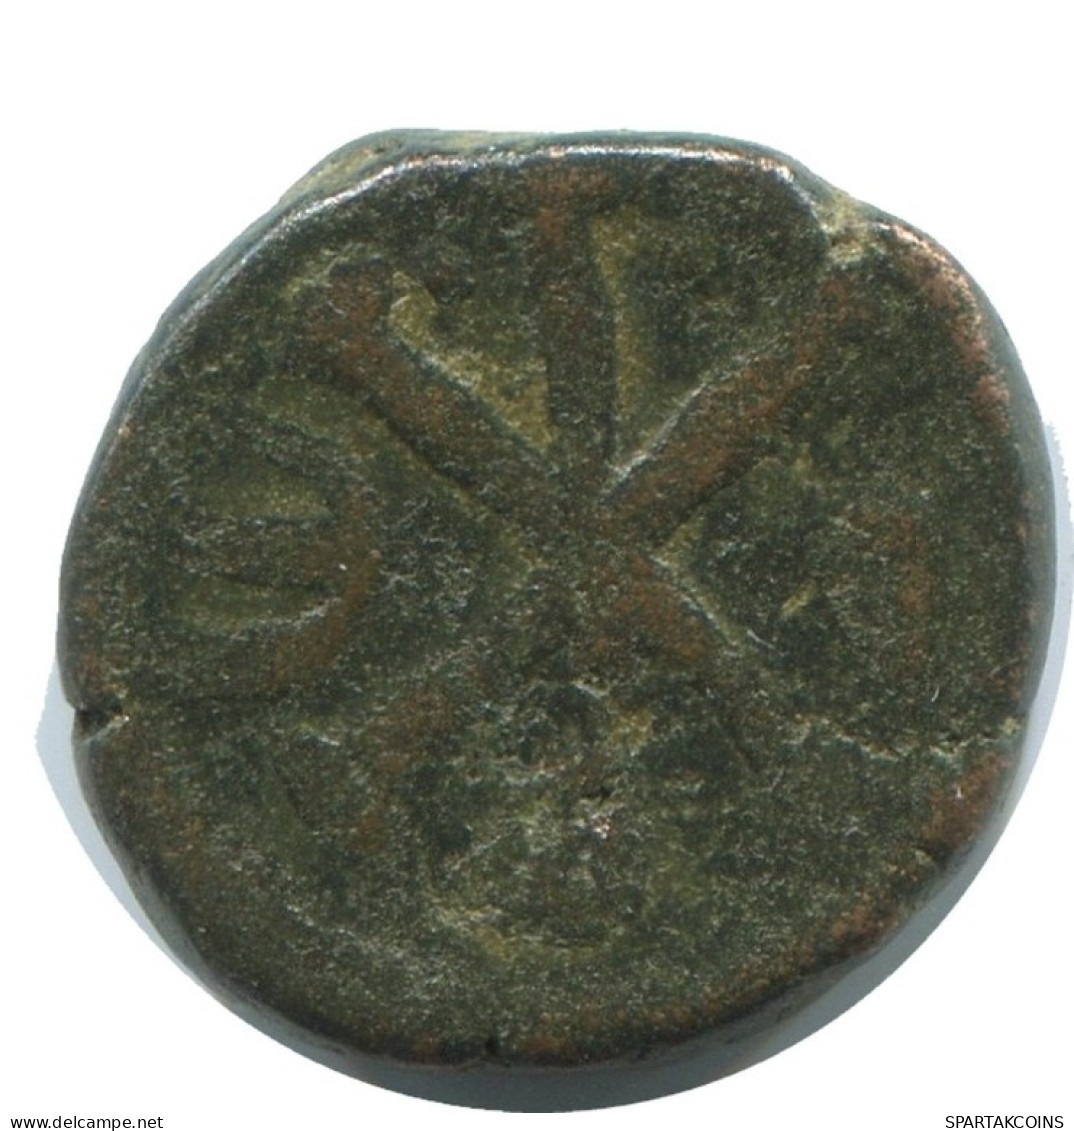 JUSTINUS I CONSTANTINOPOLIS FOLLIS Ancient BYZANTINE Coin 2.2g/15mm #AB433.9.U.A - Byzantinische Münzen